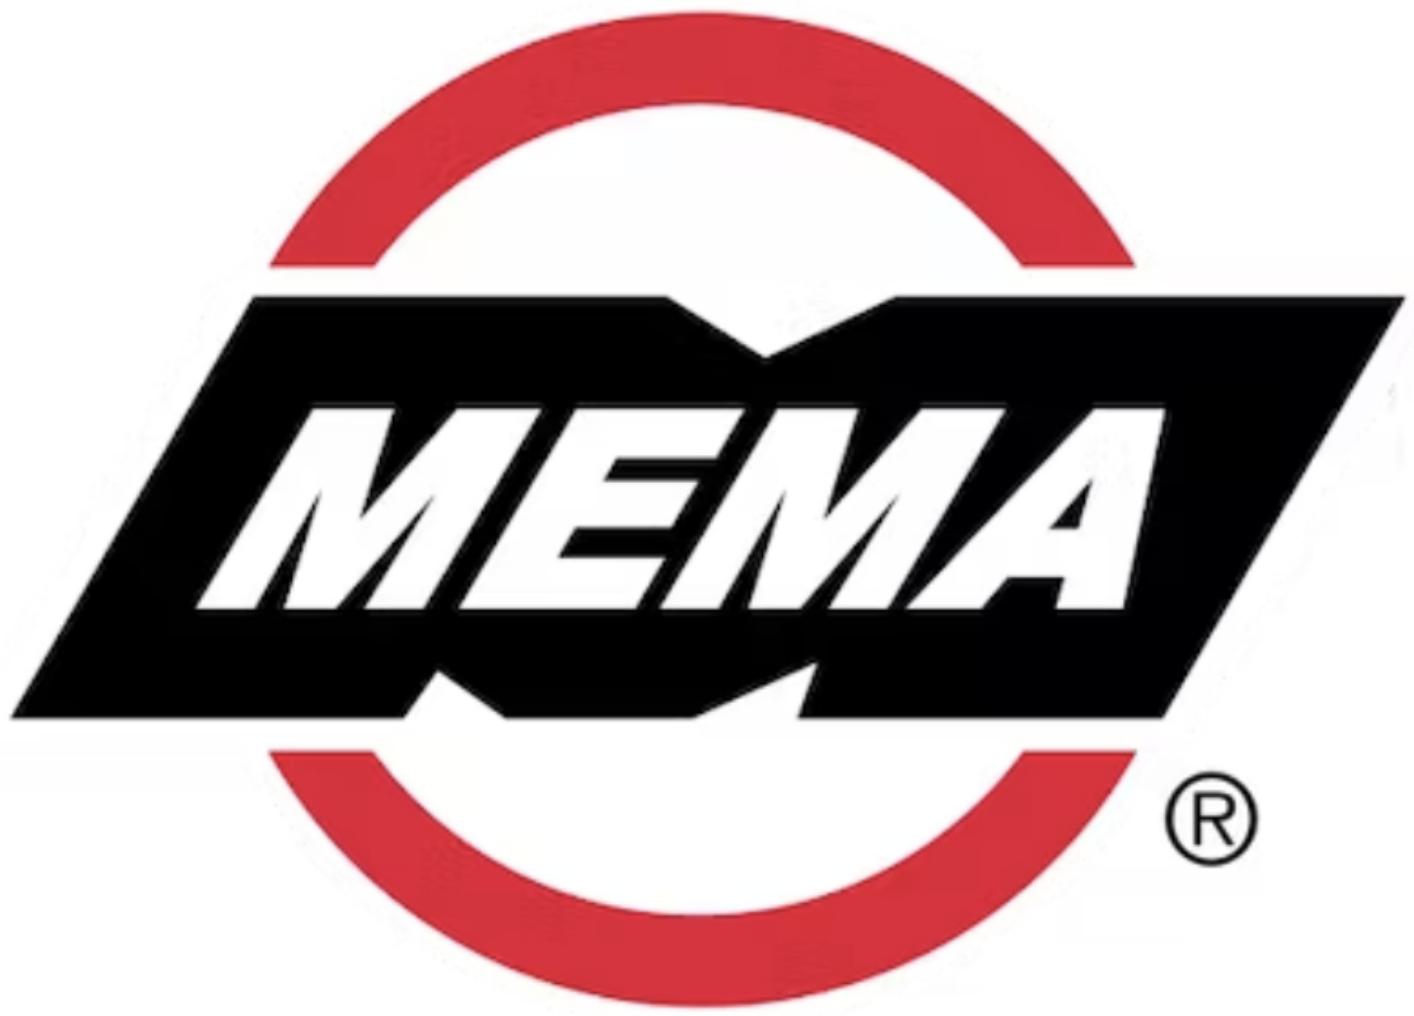 MEMA's old logo